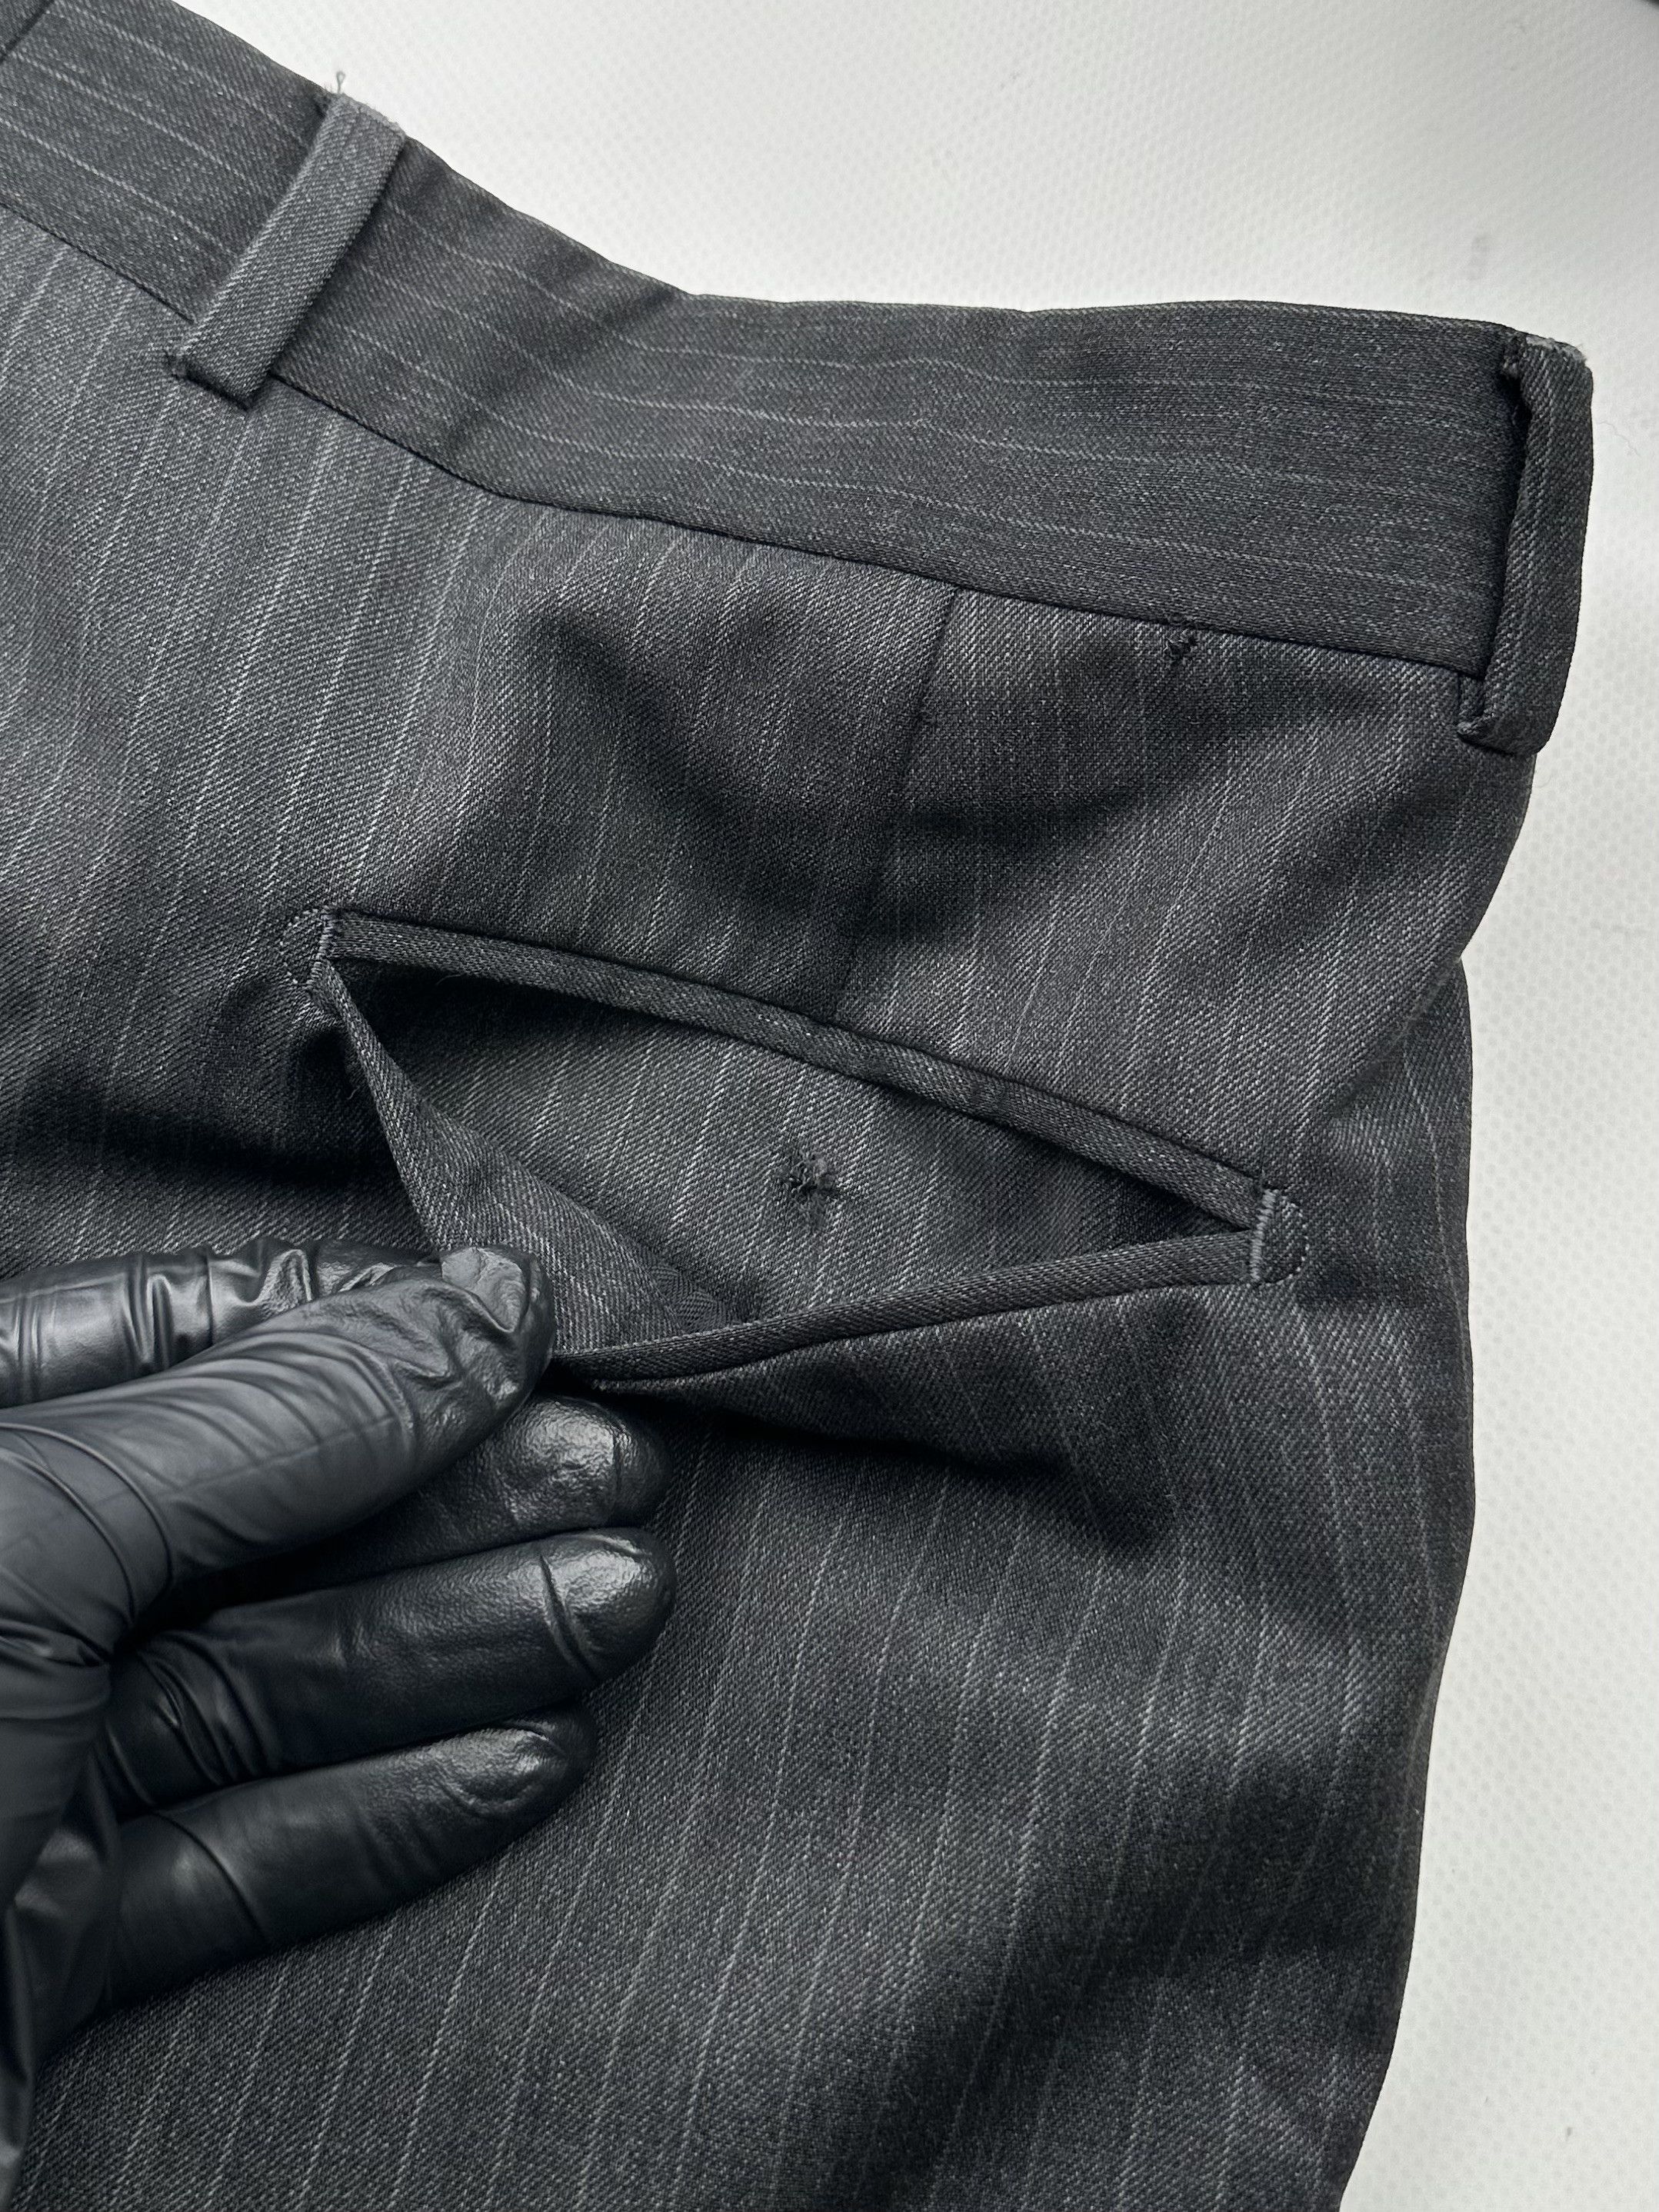 Vintage Yves Saint Laurent Vintage Wool Striped Pants Size US 34 / EU 50 - 14 Preview